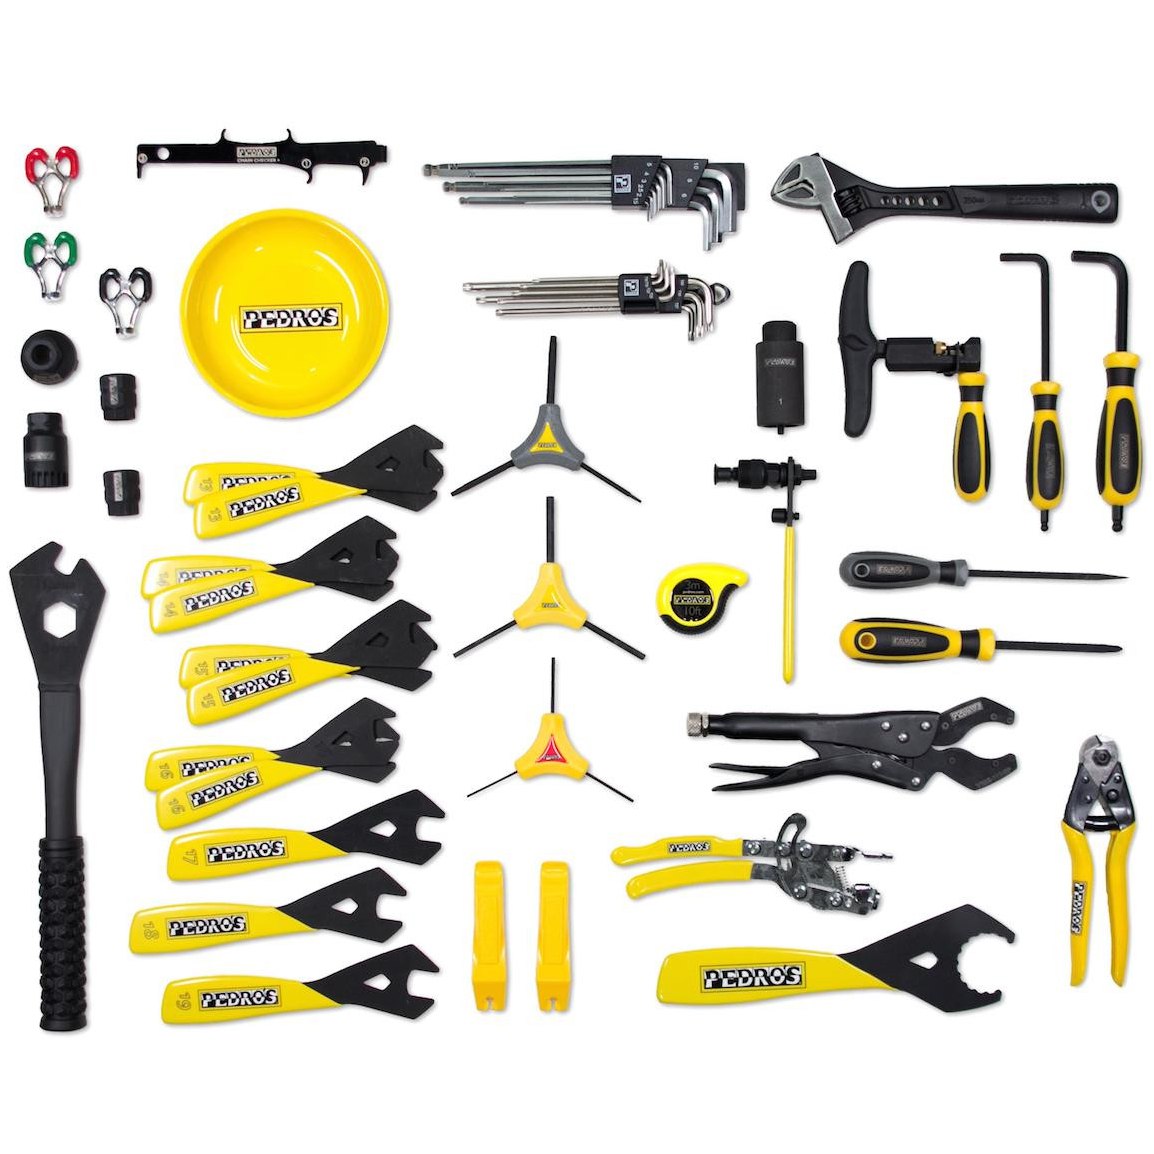 Produktbild von Pedro&#039;s Apprentice Bench Werkzeugset